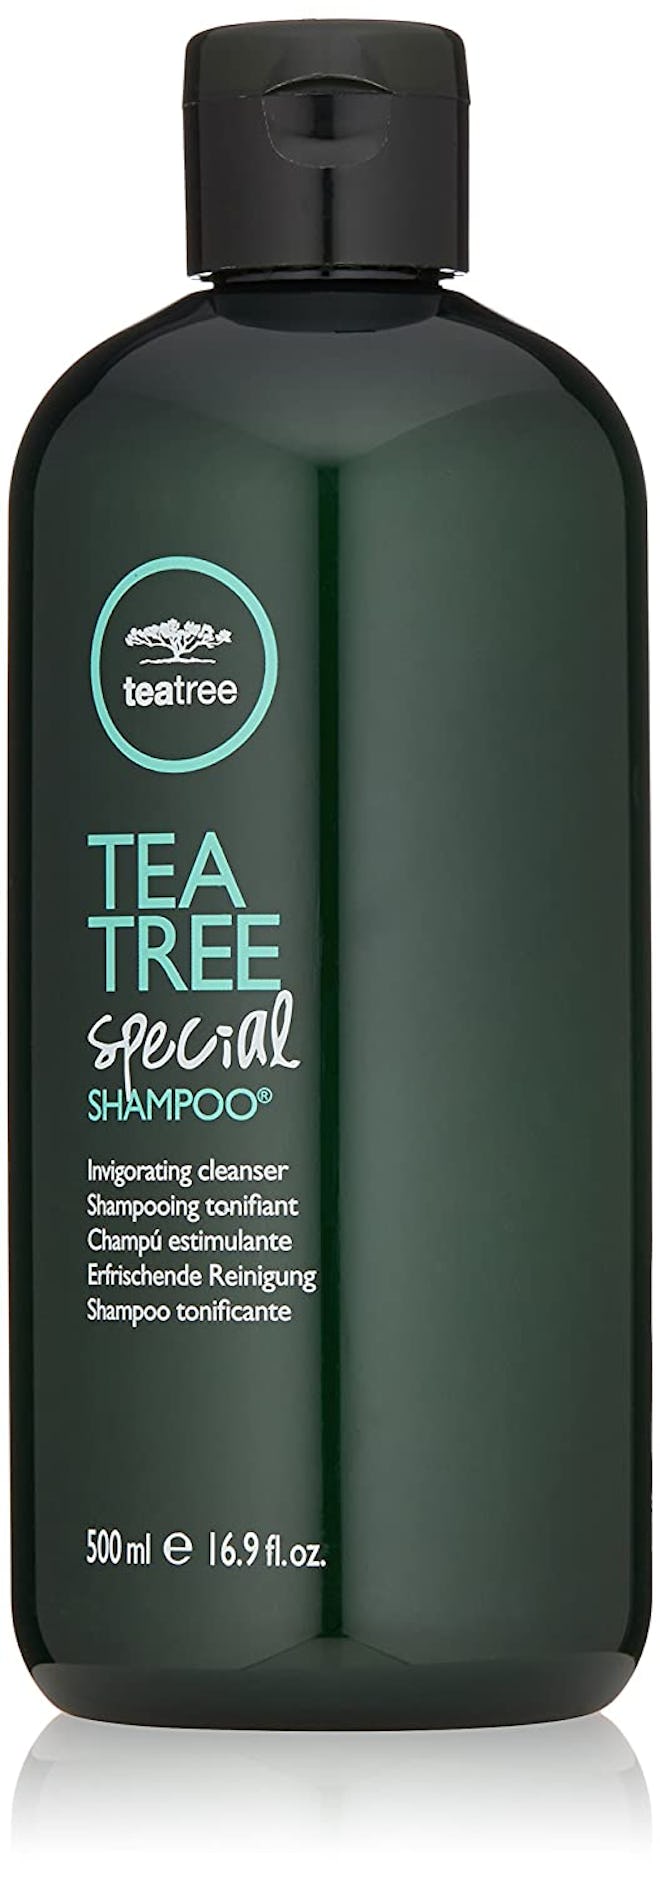 Tea Tree Special Shampoo 